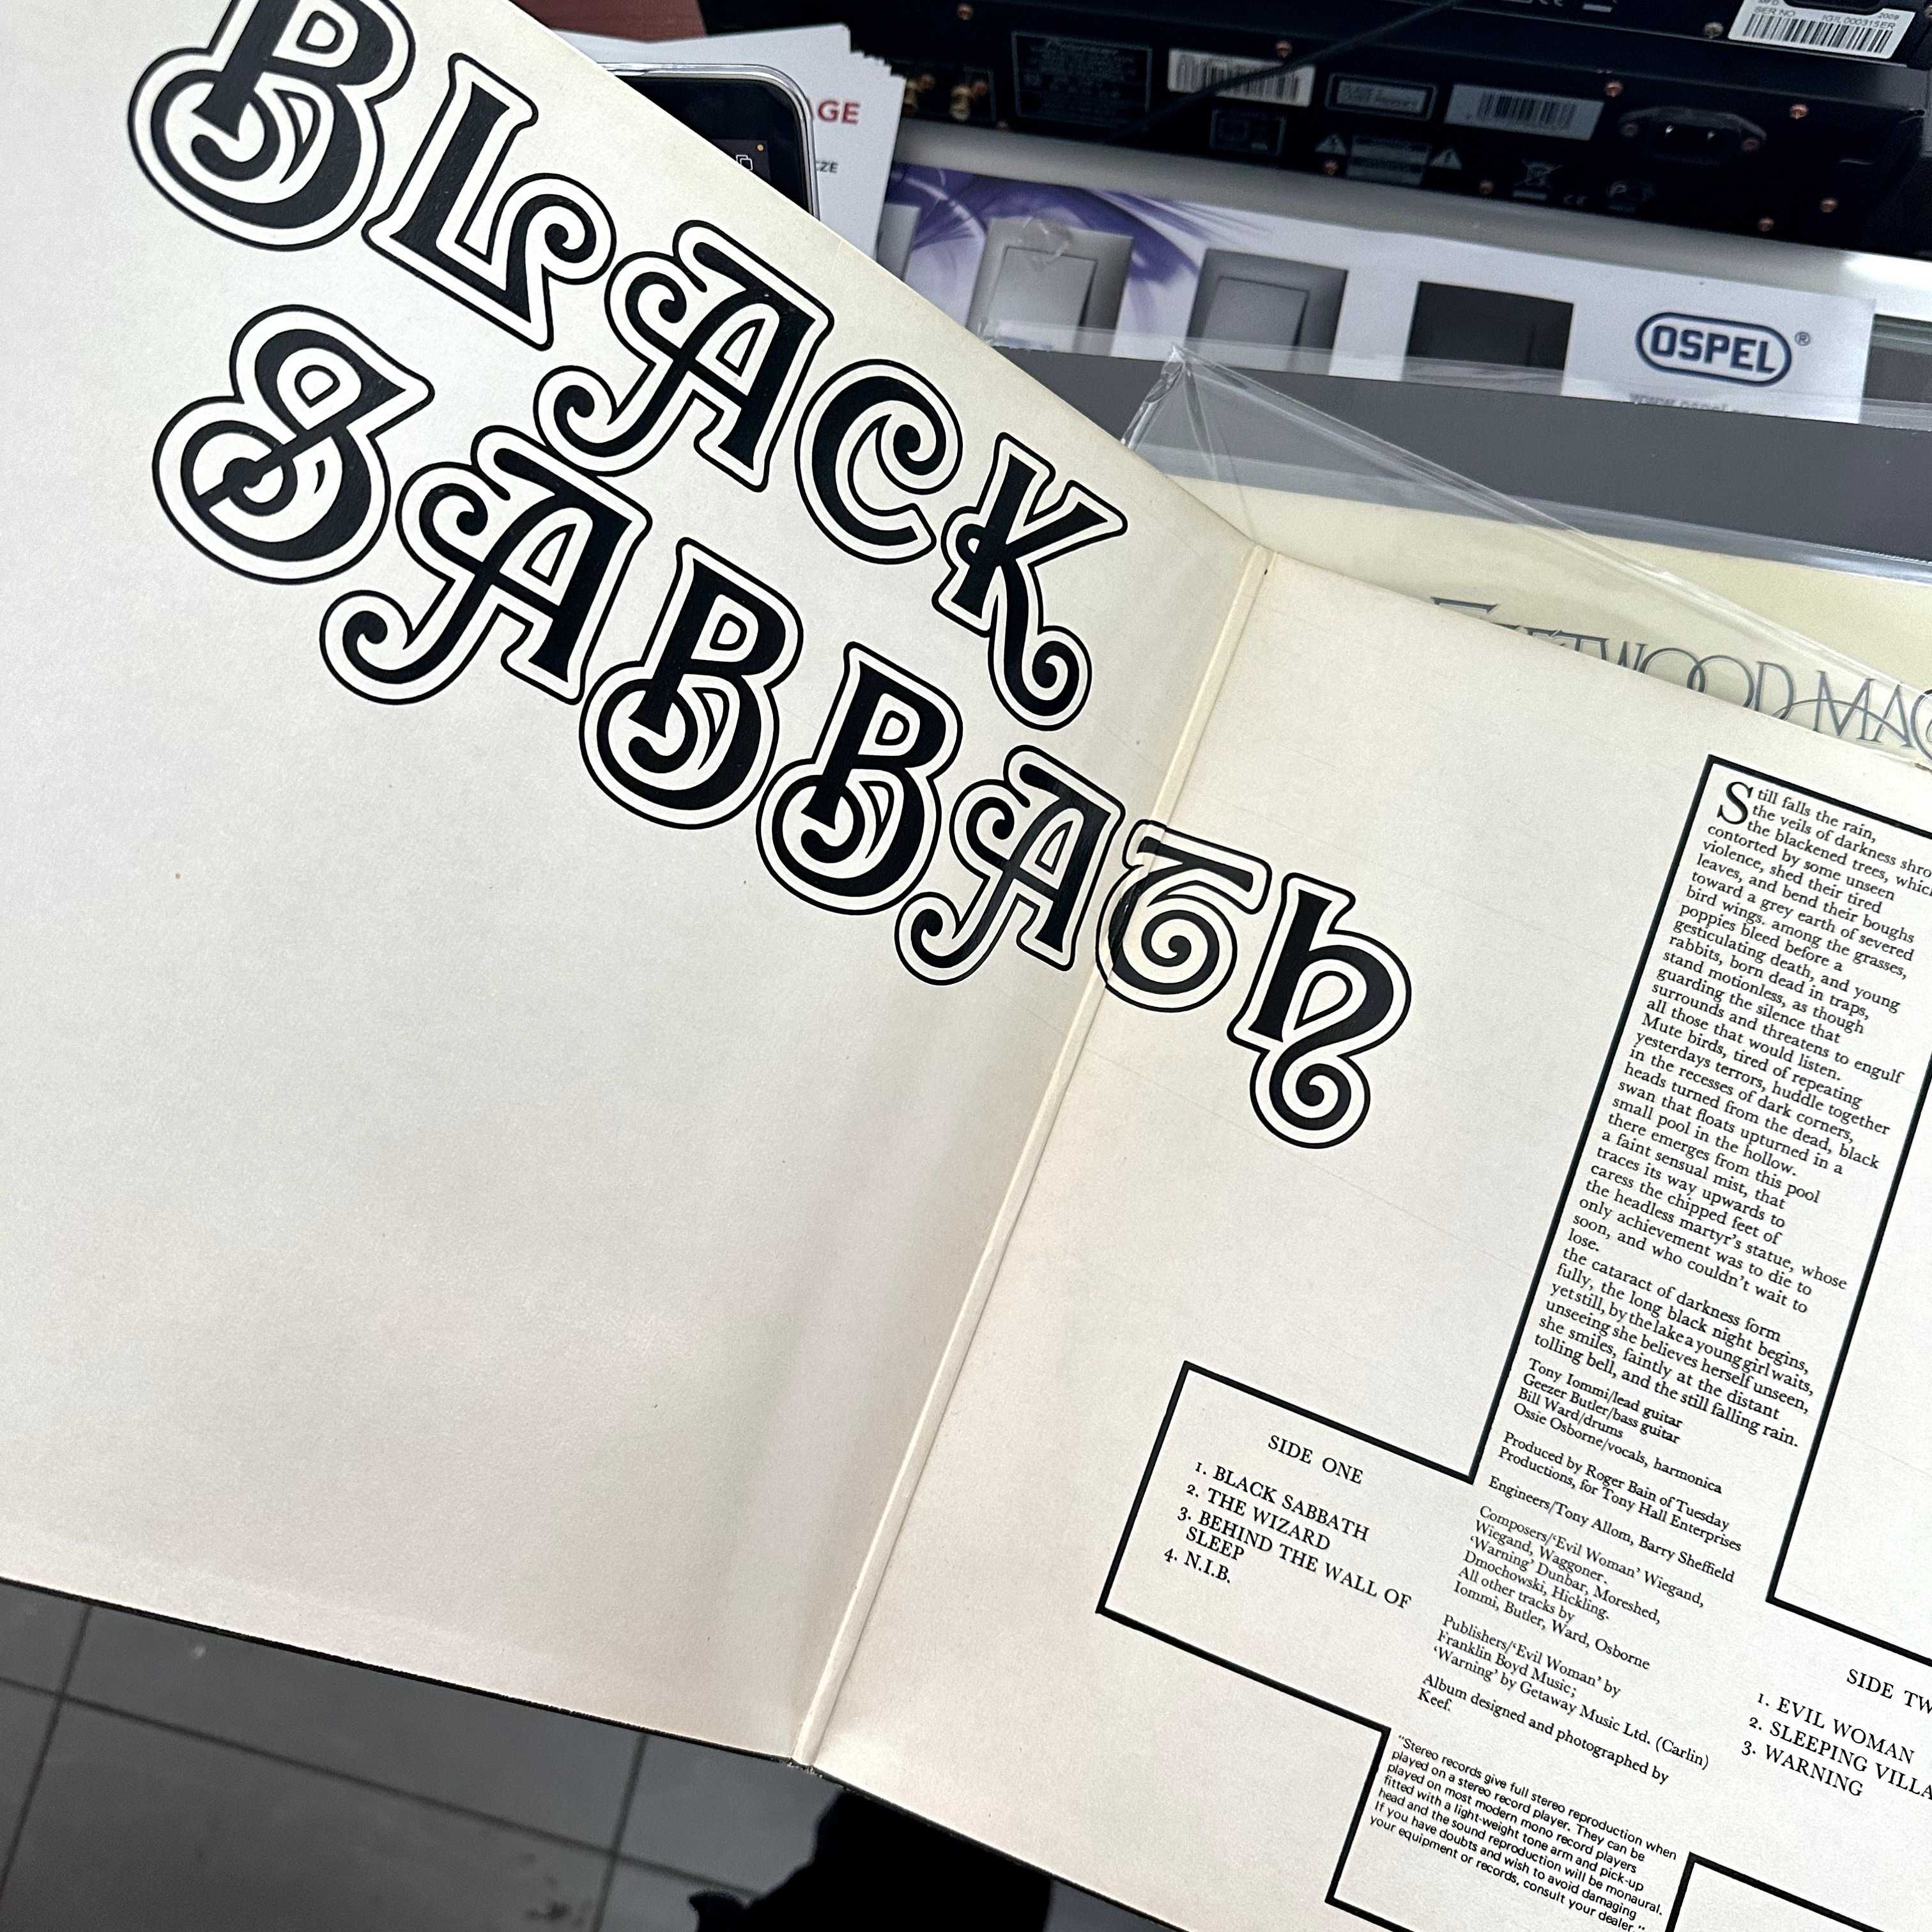 Black Sabbath (Vinyl, 1976, Germany)